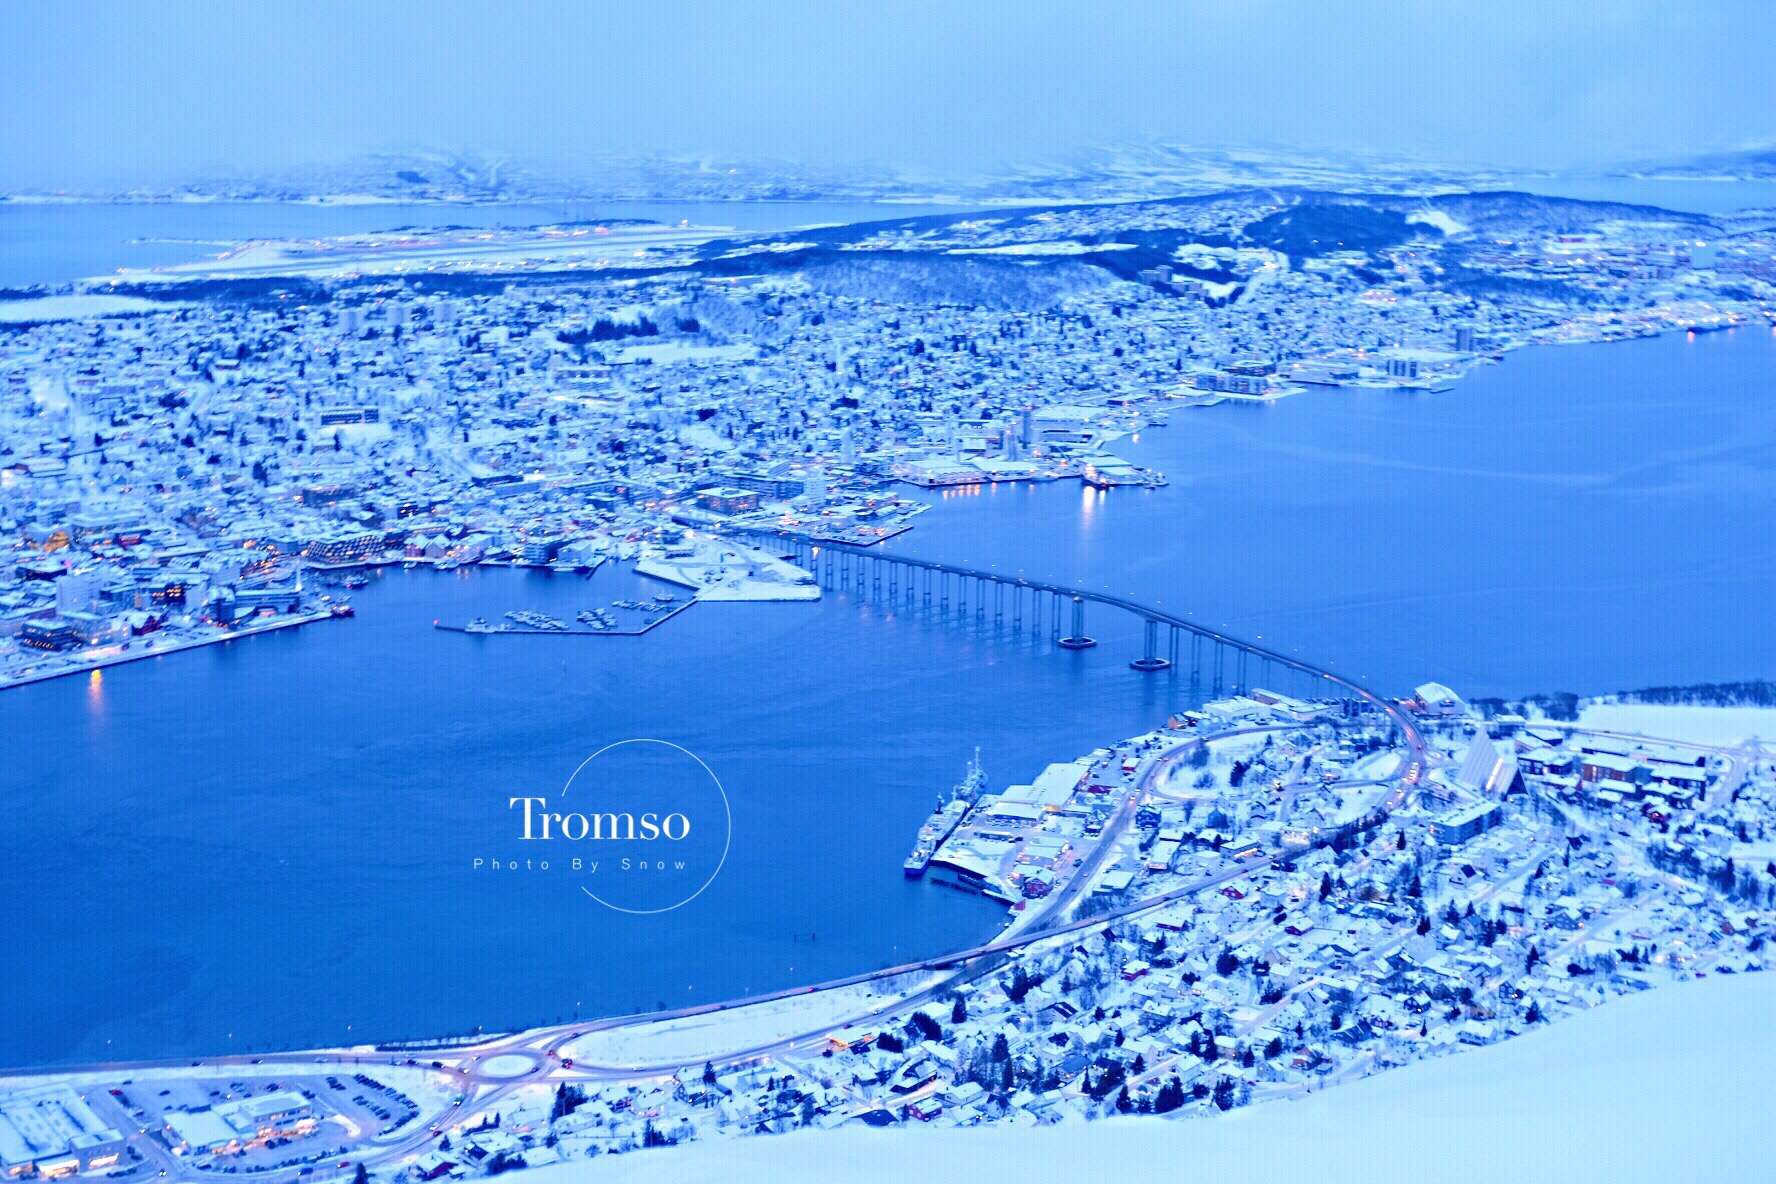 💛一生一遇·每一帧都是画のTromso🐾 挪威极光之城特罗姆瑟✨  特罗姆瑟缆车也是绝佳的极光观测点